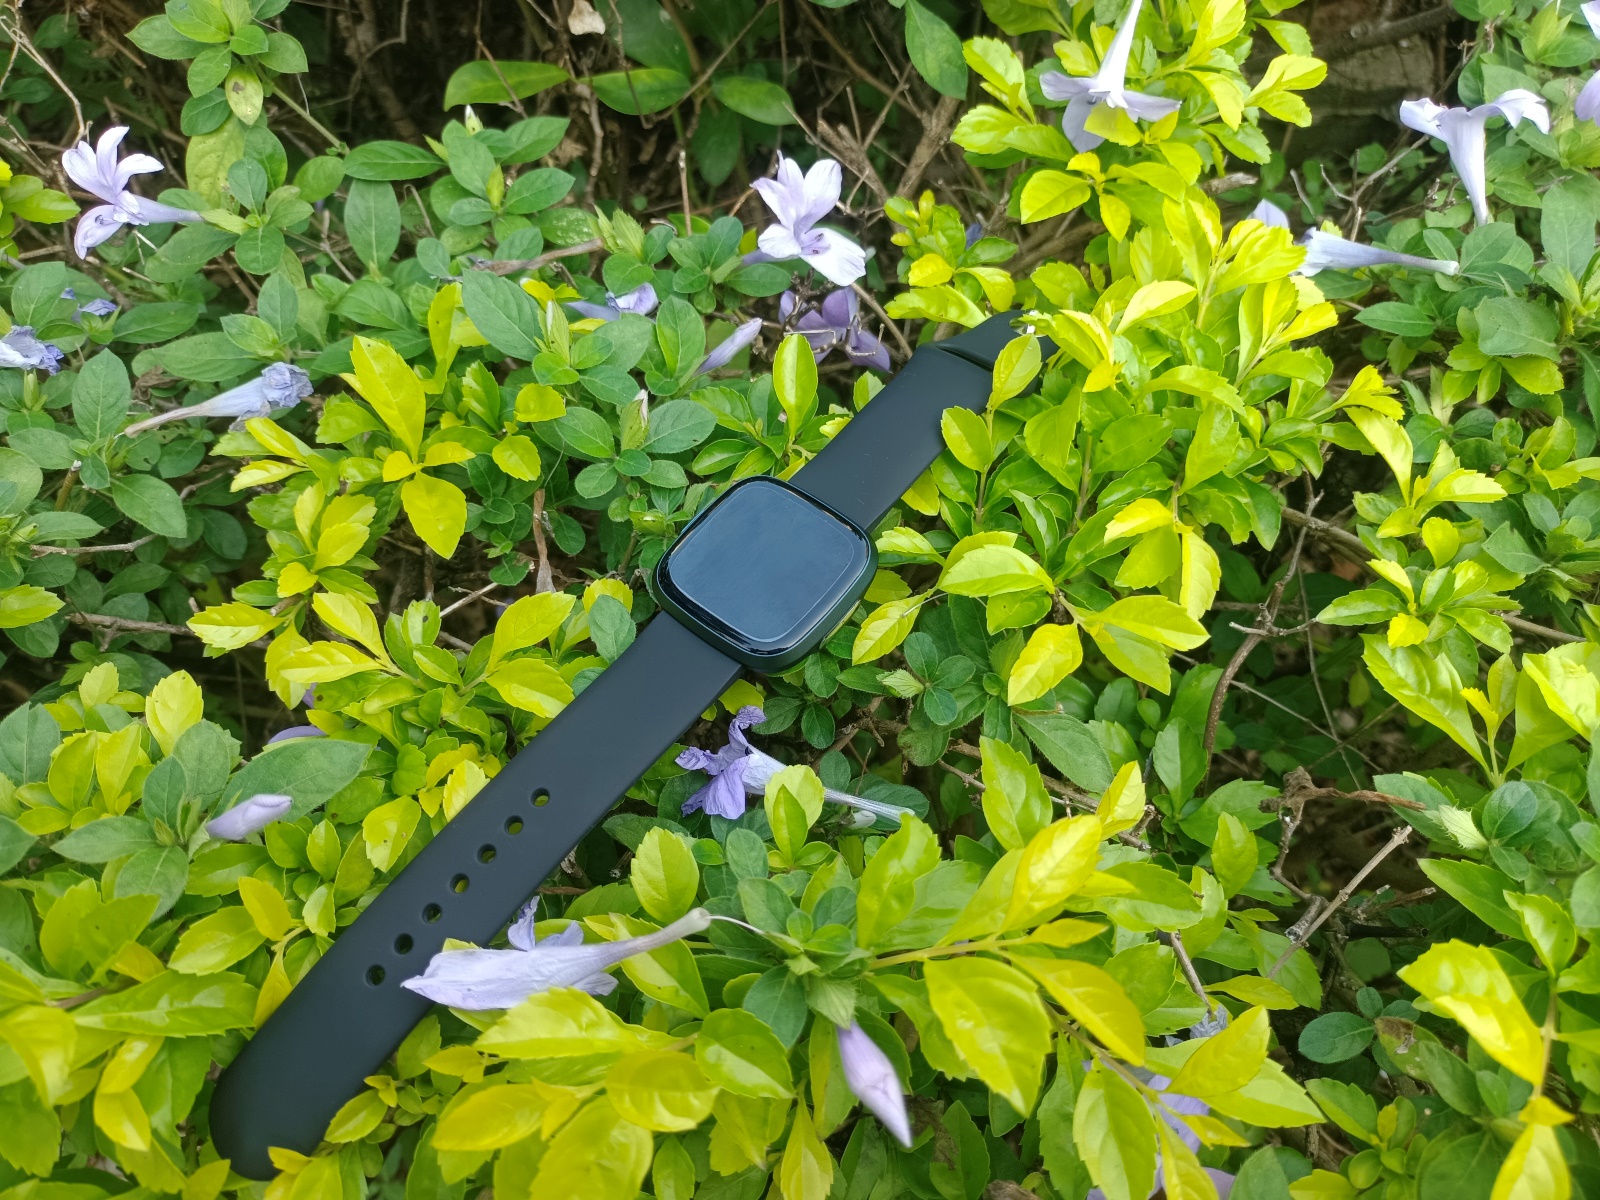 医美|新年送爸妈与家人好物推荐之  多功能健康监测智能手表dido G28S Pro